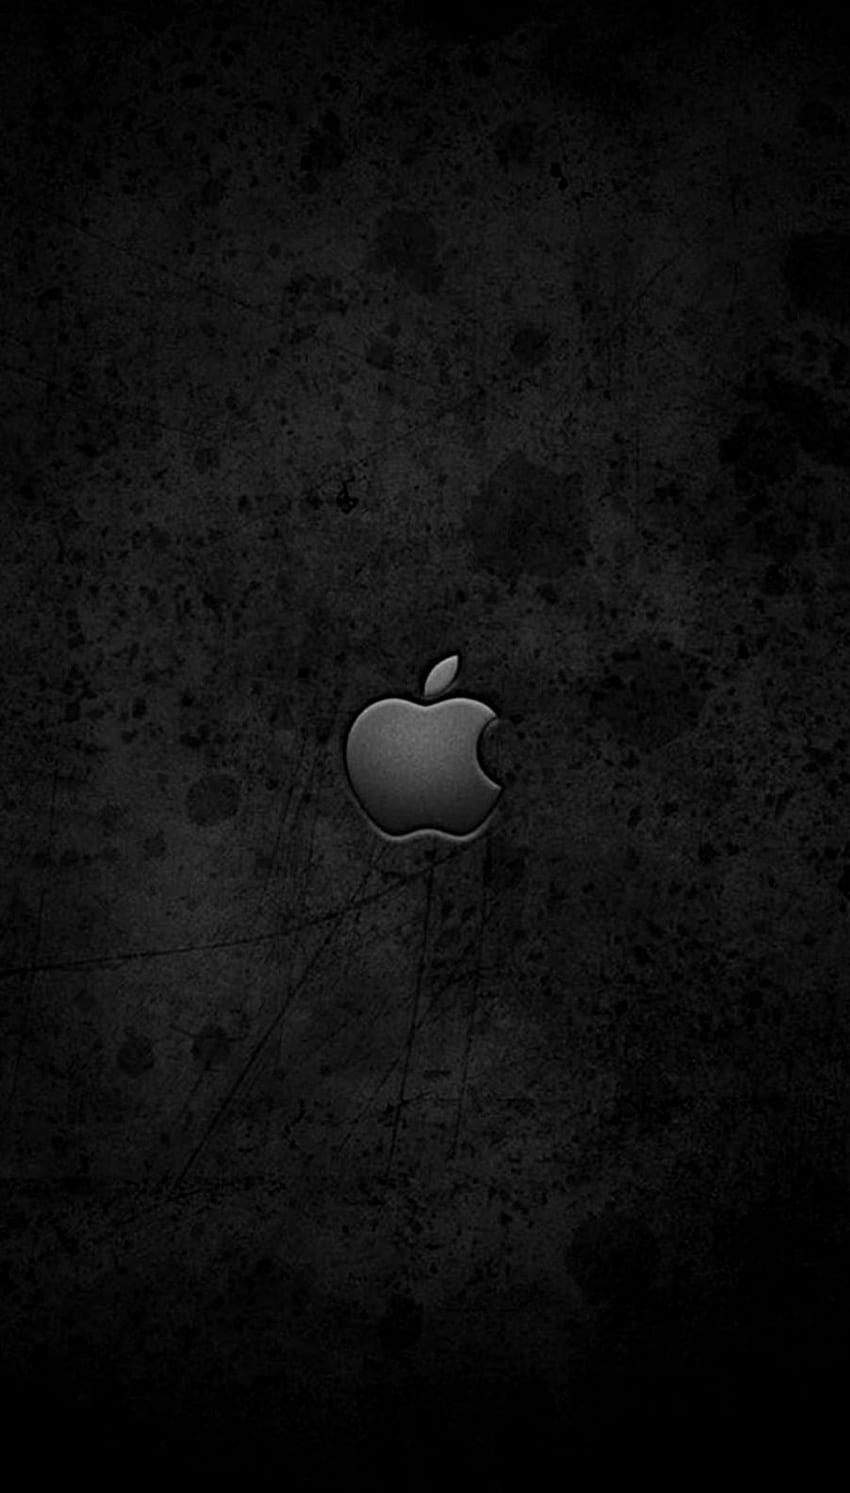 iPhone : Apple iPhone 7 10 6 4s 11 6s X Original 8 Pro Max. Apple iPhone . Apple Ios 6, Black Apple 7 HD phone wallpaper